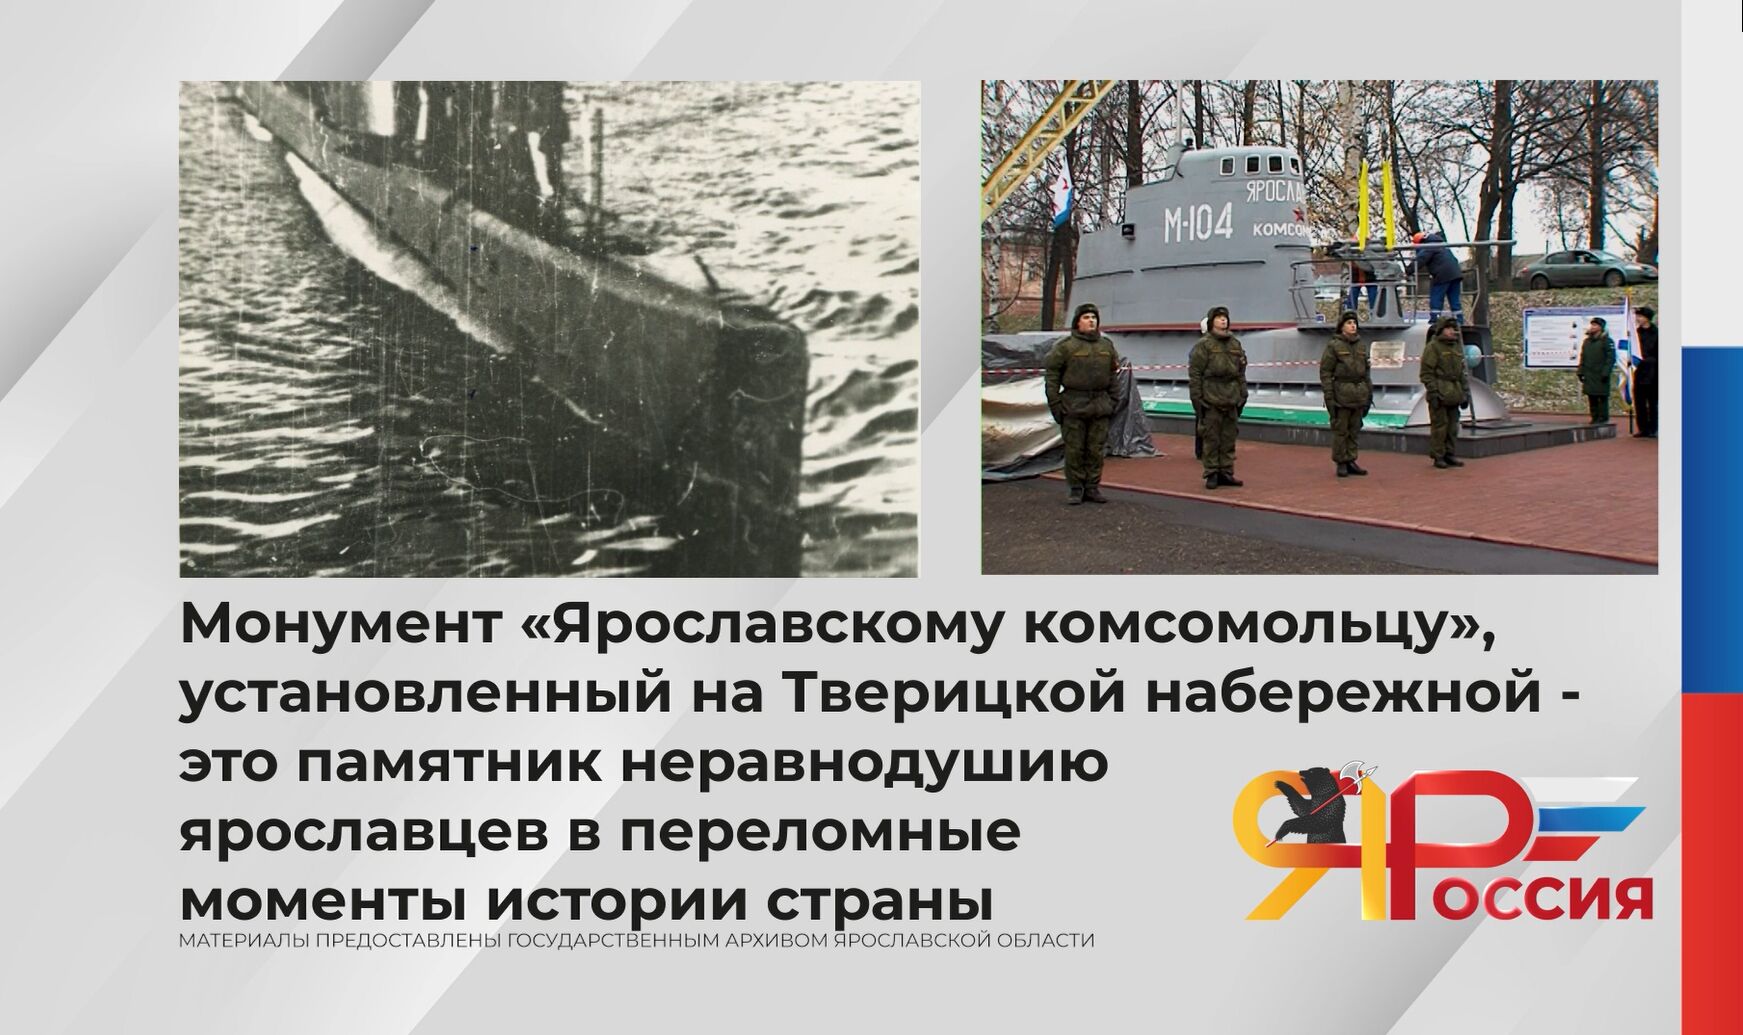 80 лет назад на подводной лодке «Ярославский комсомолец», построенной на средства, собранные молодежью Ярославской области, подняли военно-морской флаг